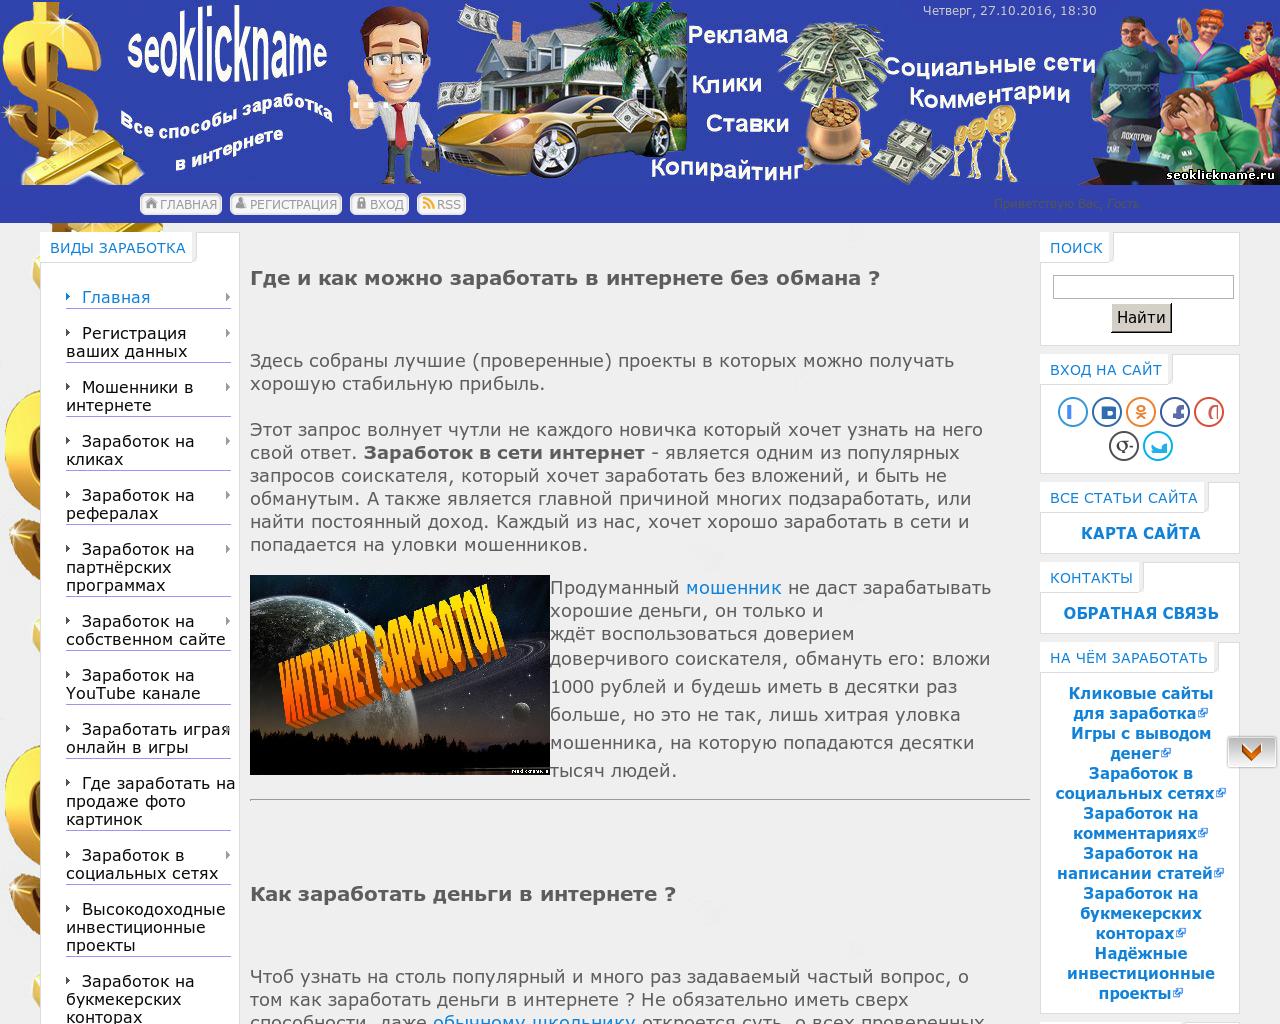 Изображение сайта seoklickname.ru в разрешении 1280x1024